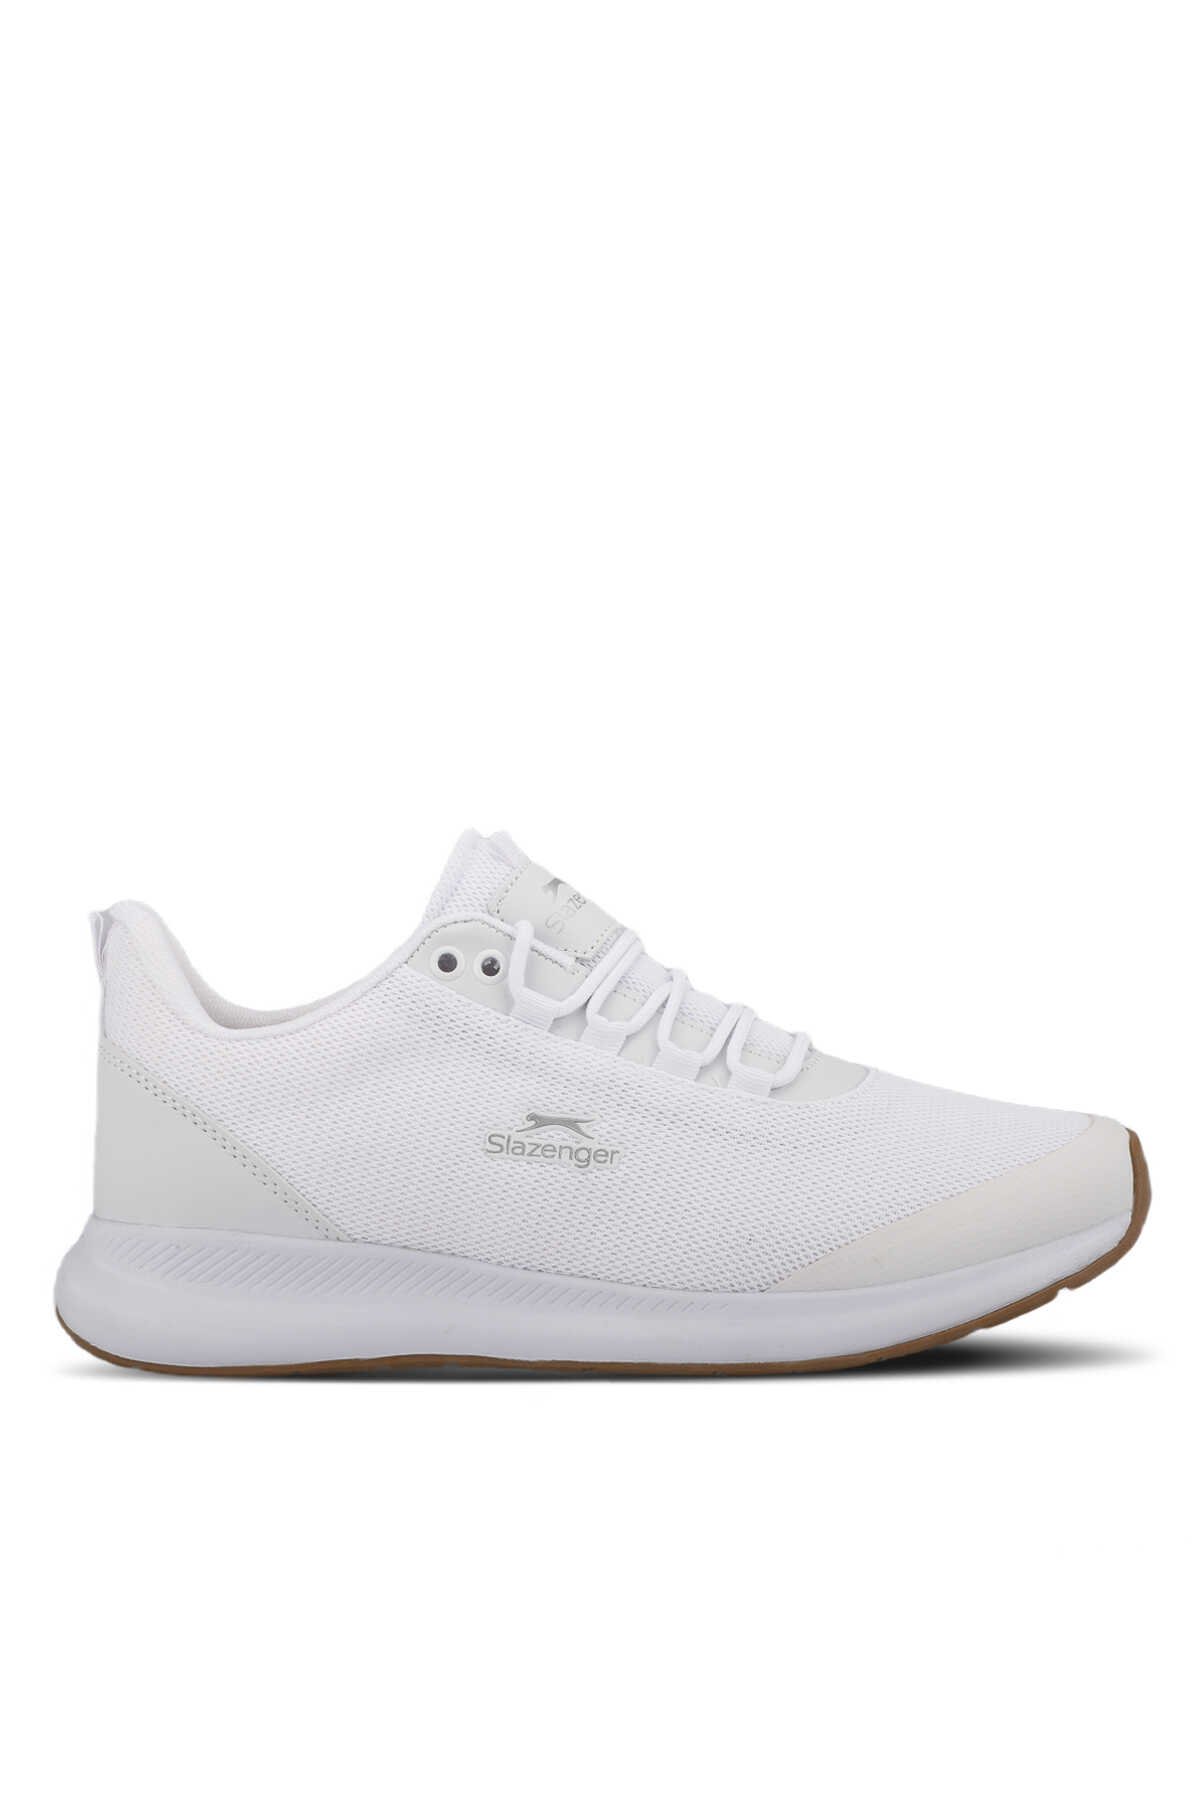 Slazenger - Slazenger ZITA Erkek Sneaker Ayakkabı Beyaz